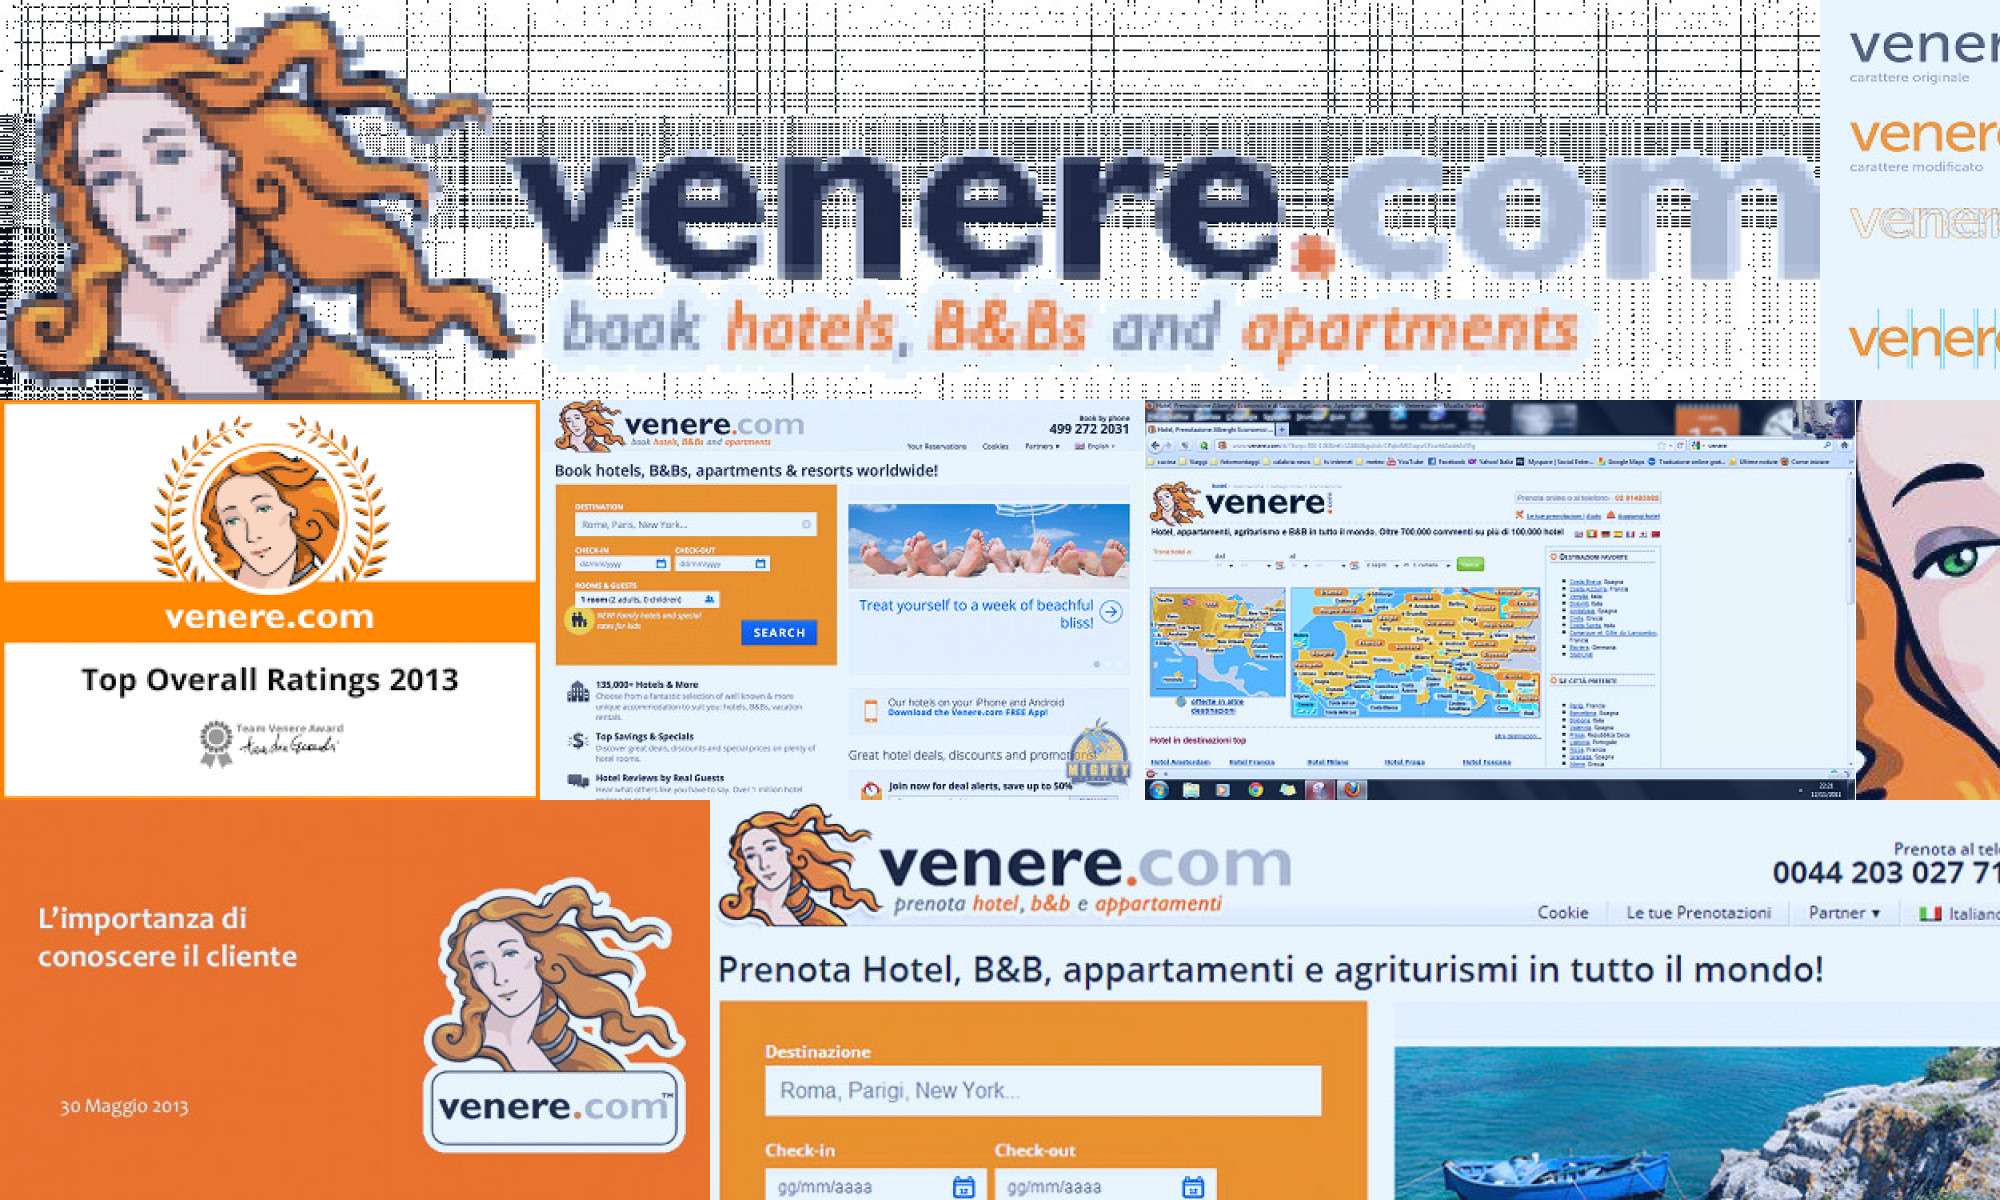 venere.com